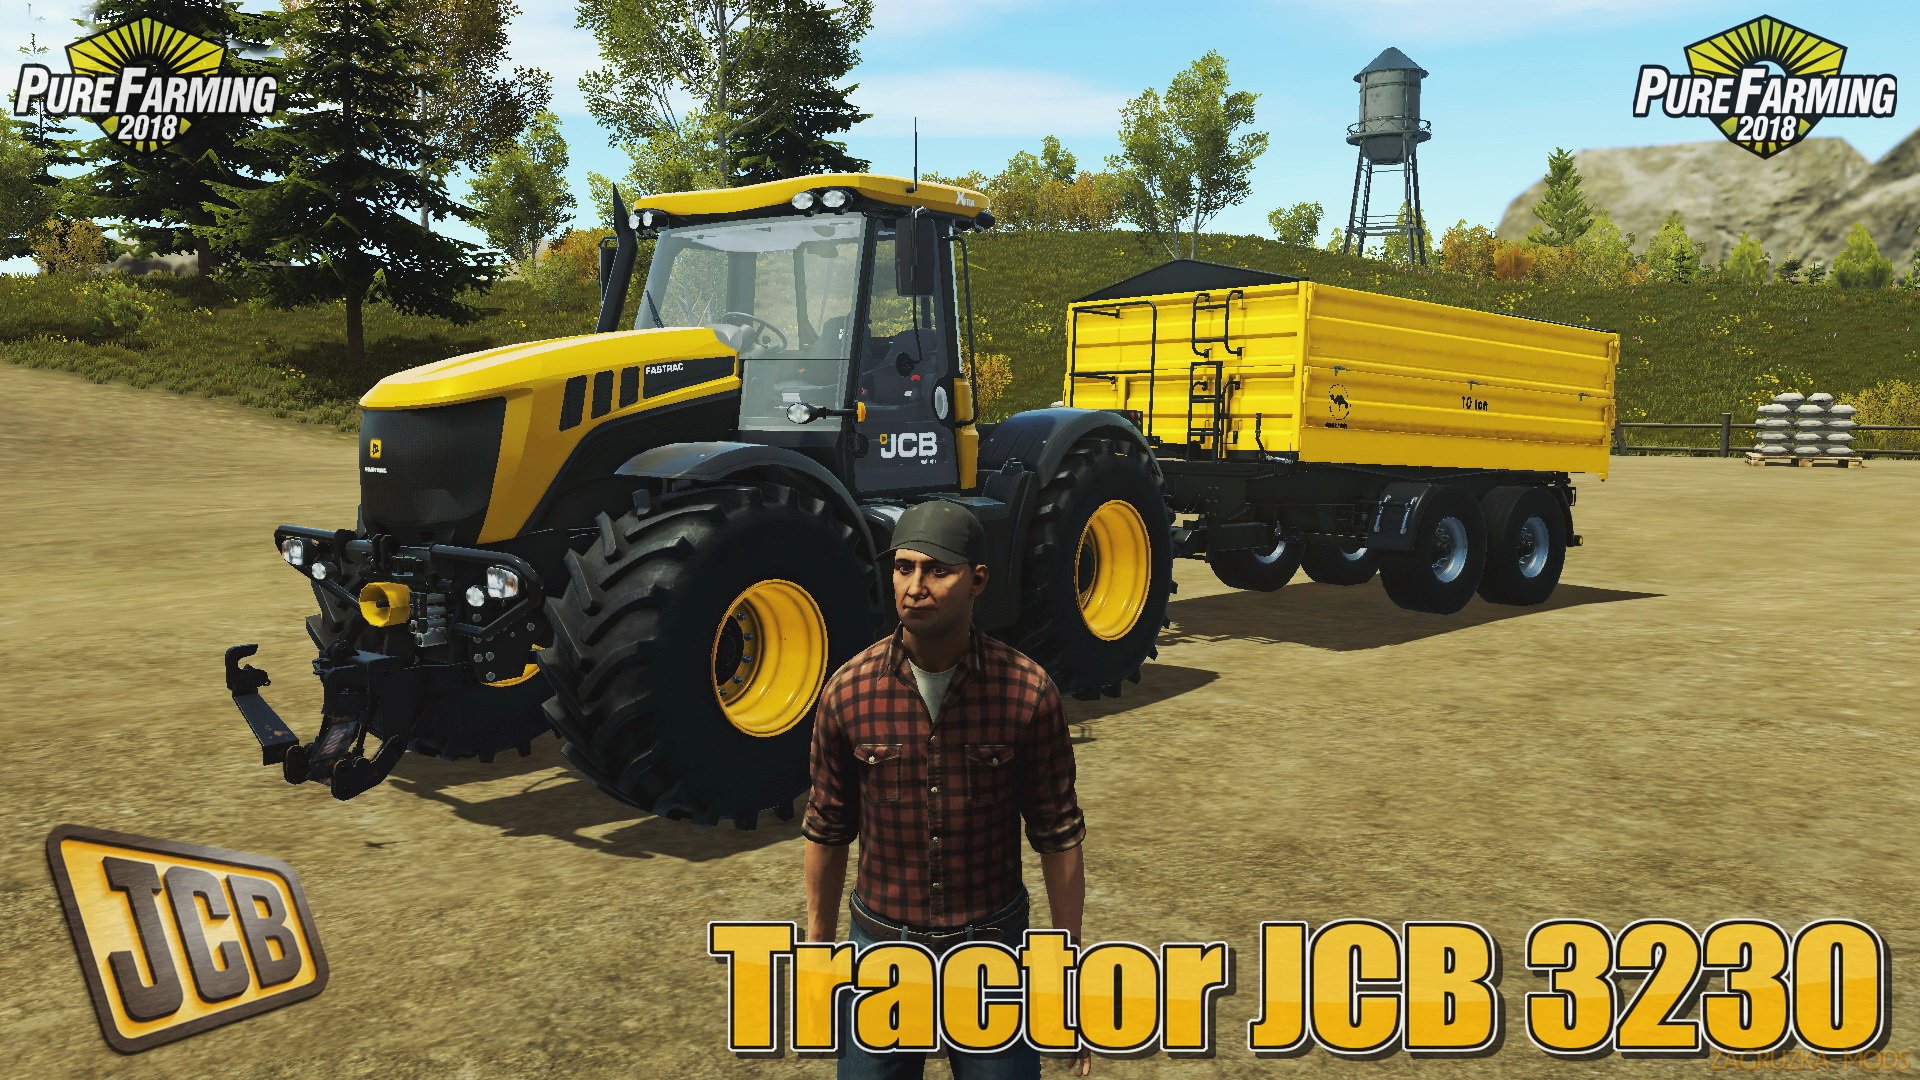 Tractor JCB 3230 v1.0 for Pure Farming 2018